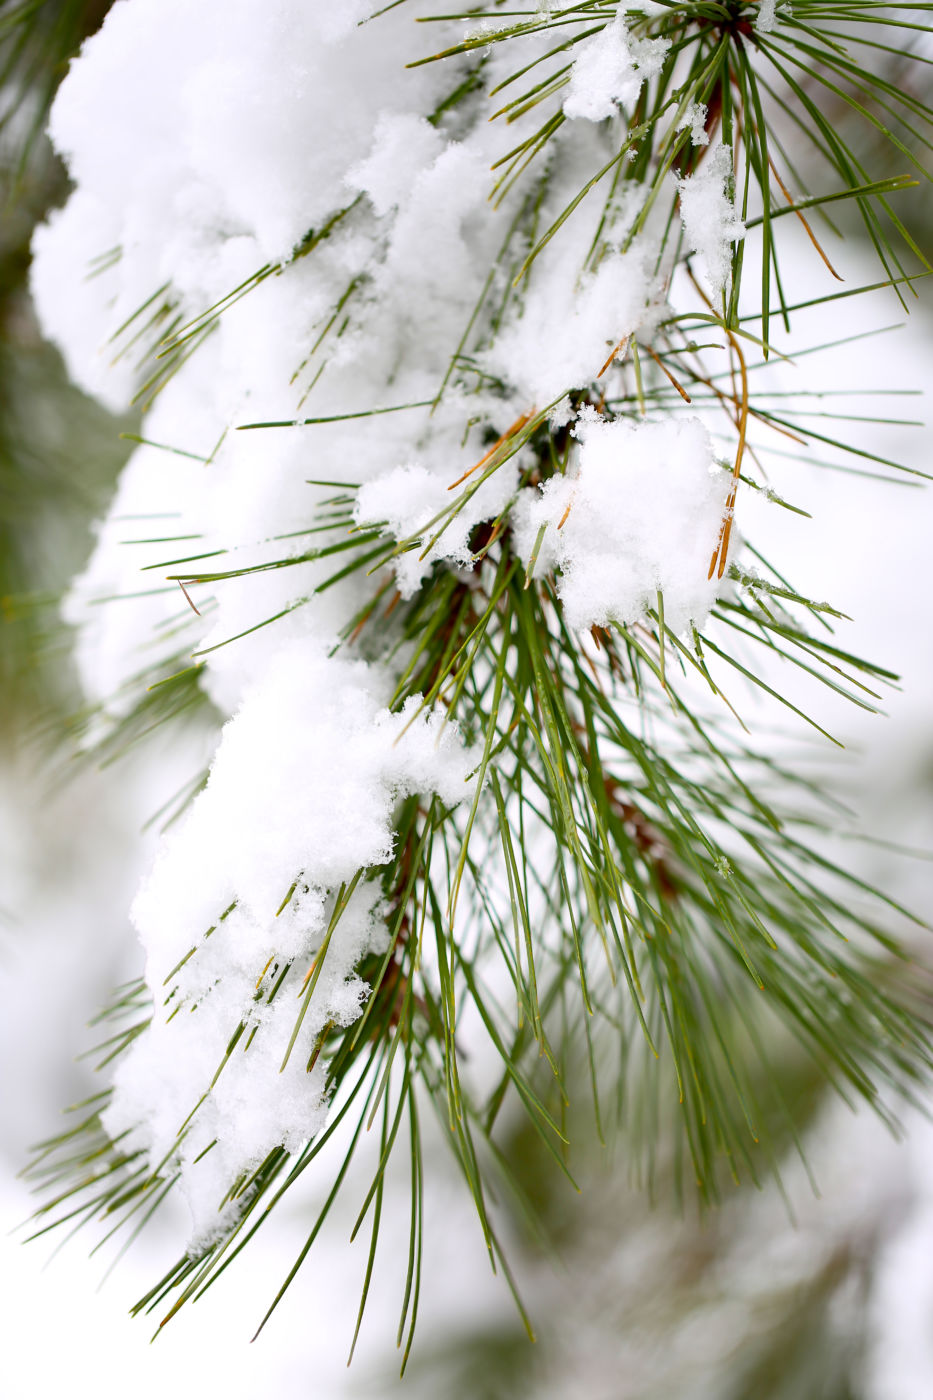 Snow-covered pine (Pinus sp.) needles.